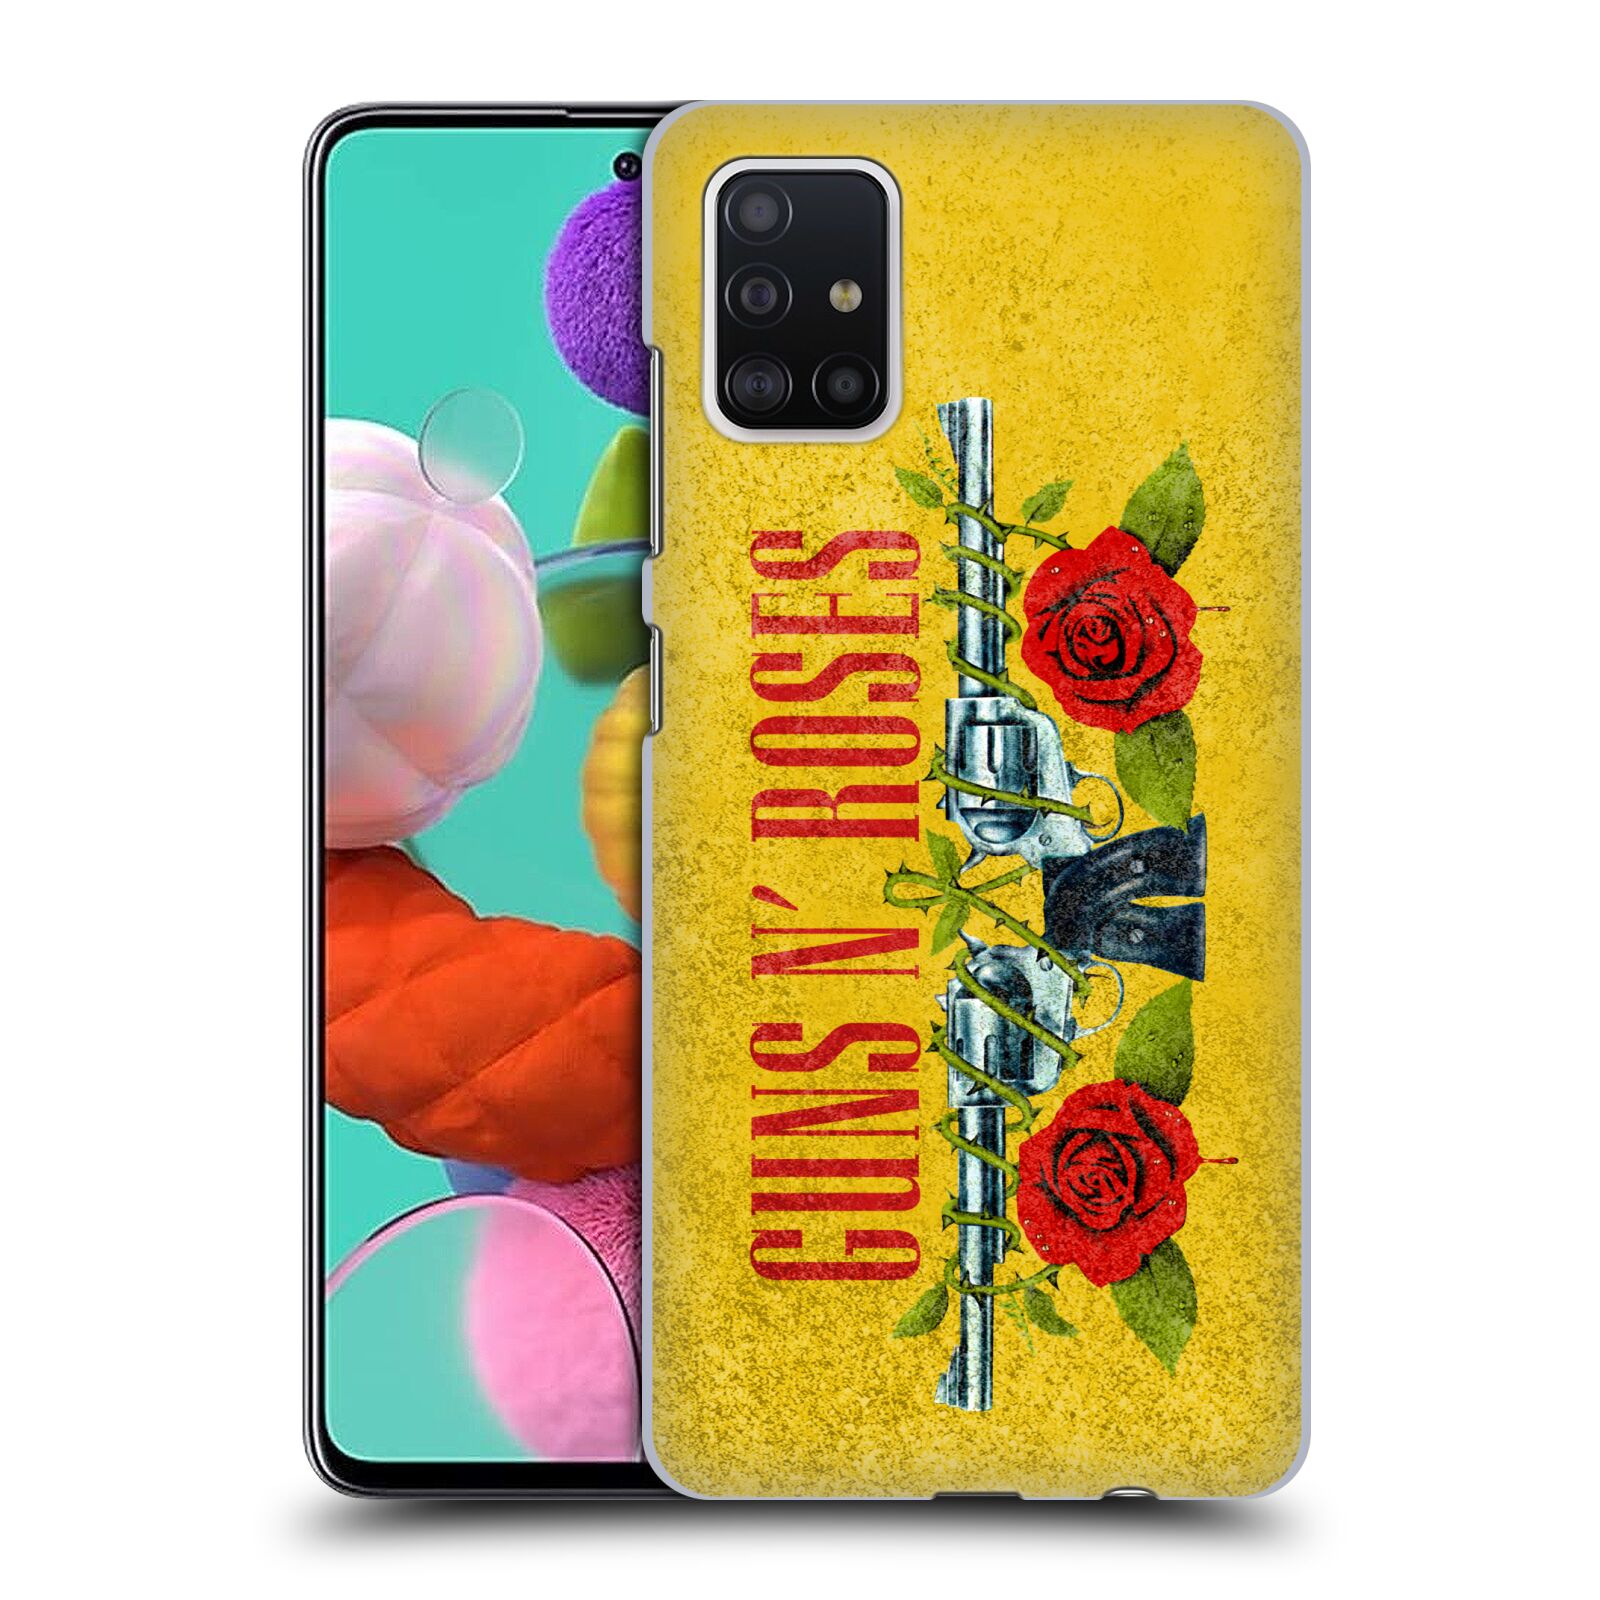 Pouzdro na mobil Samsung Galaxy A51 - HEAD CASE - hudební skupina Guns N Roses pistole a růže žluté pozadí